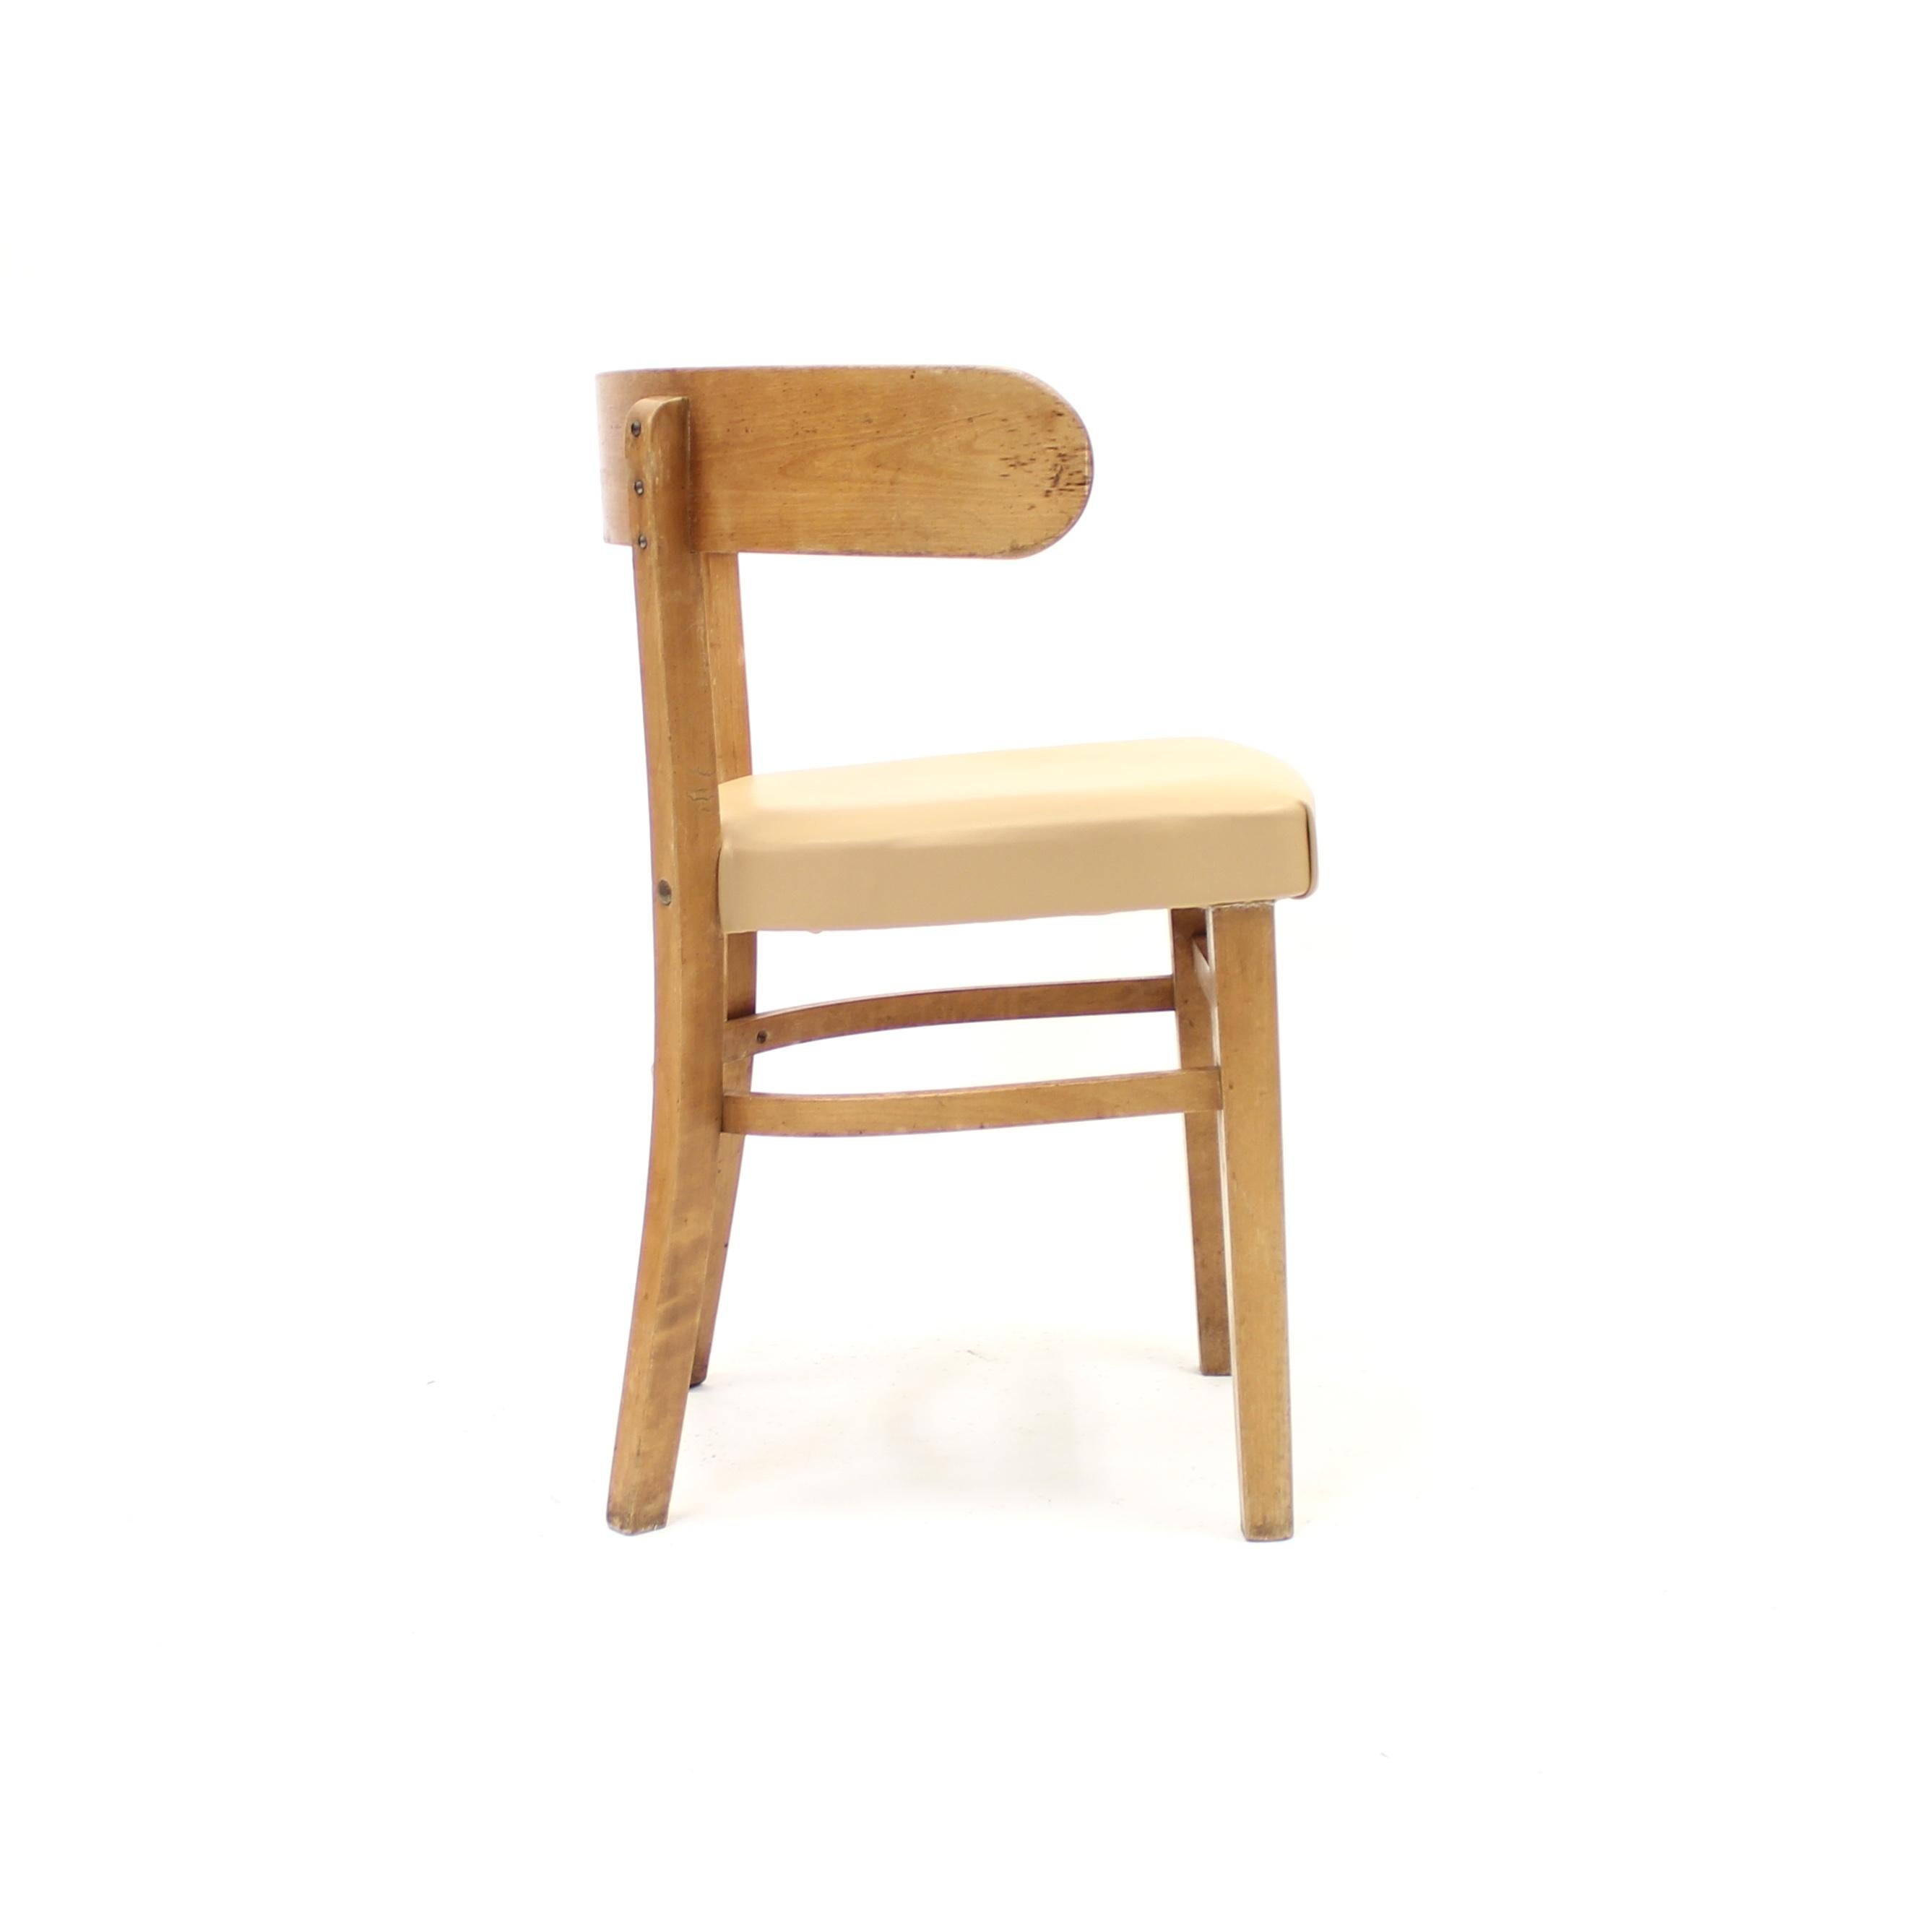 Leather Werner West, Hugging Chair, Wilhelm Schauman Ltd, 1940s